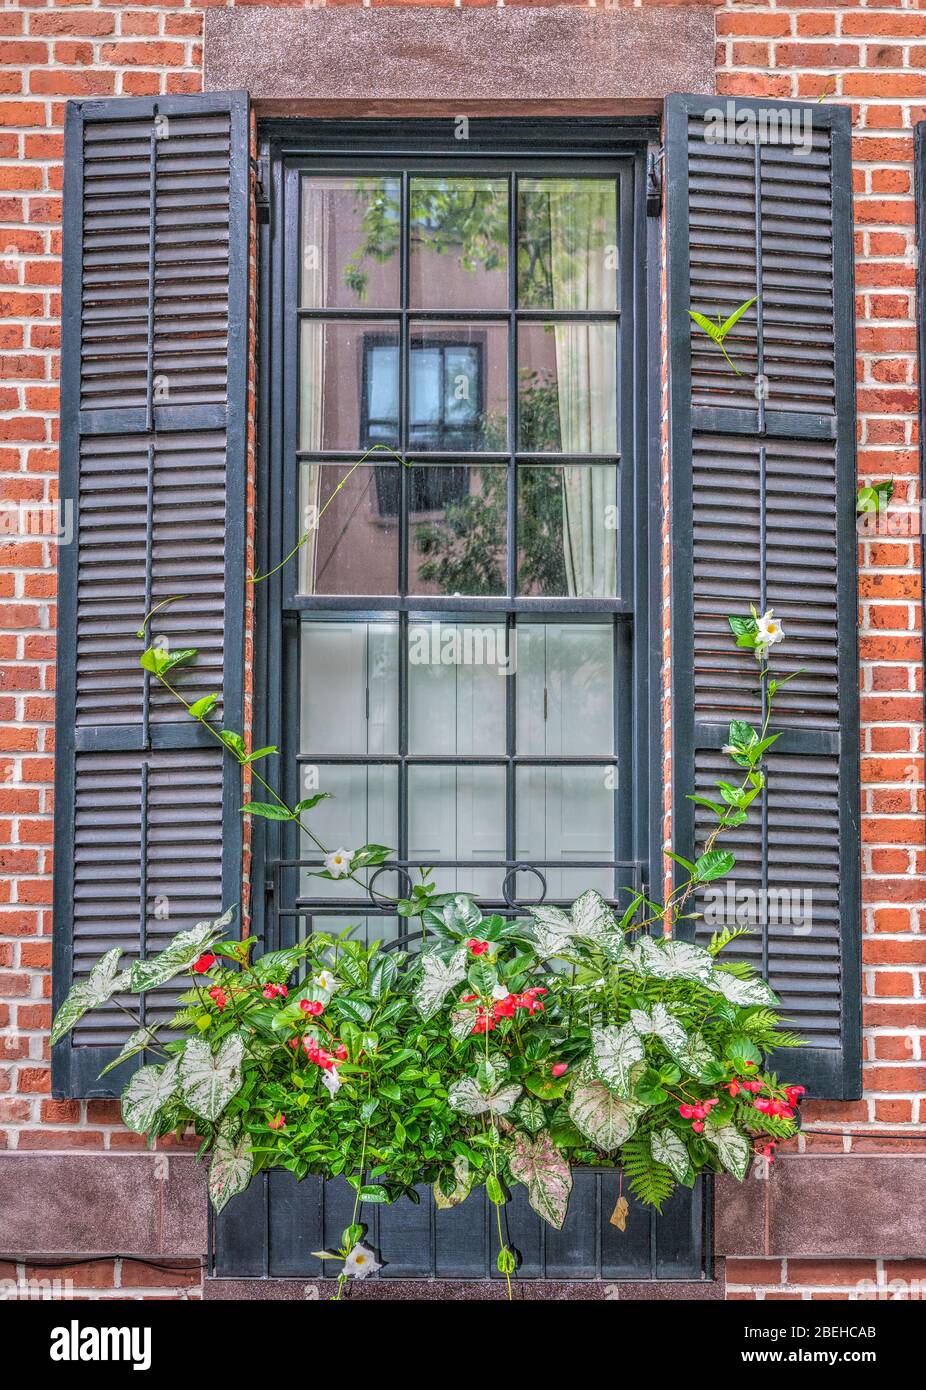 Grande fenêtre dans une ville avec volets bleu/gris et une fenêtre avec des fleurs et des plantes vibrantes.il y a un reflet dans la fenêtre d'une autre fenêtre. Banque D'Images